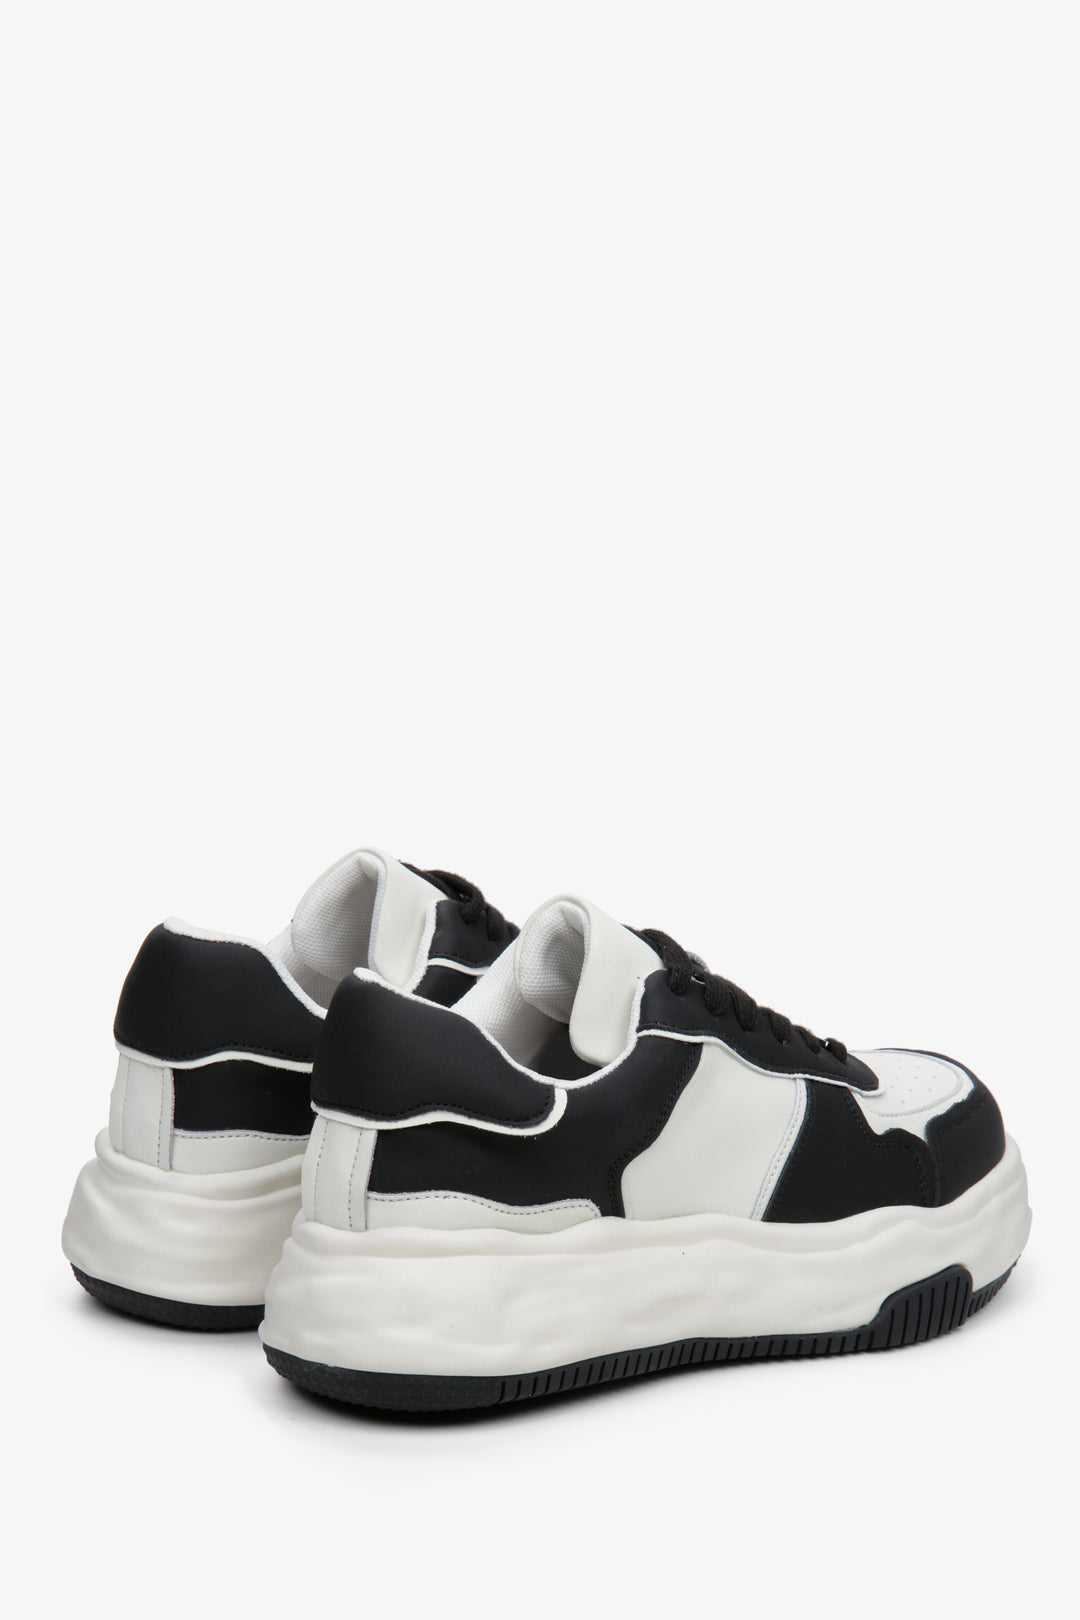 Skórzane, czarno-białe sneakersy Estro - zbliżenie na zapiętek i linię boczną butów.